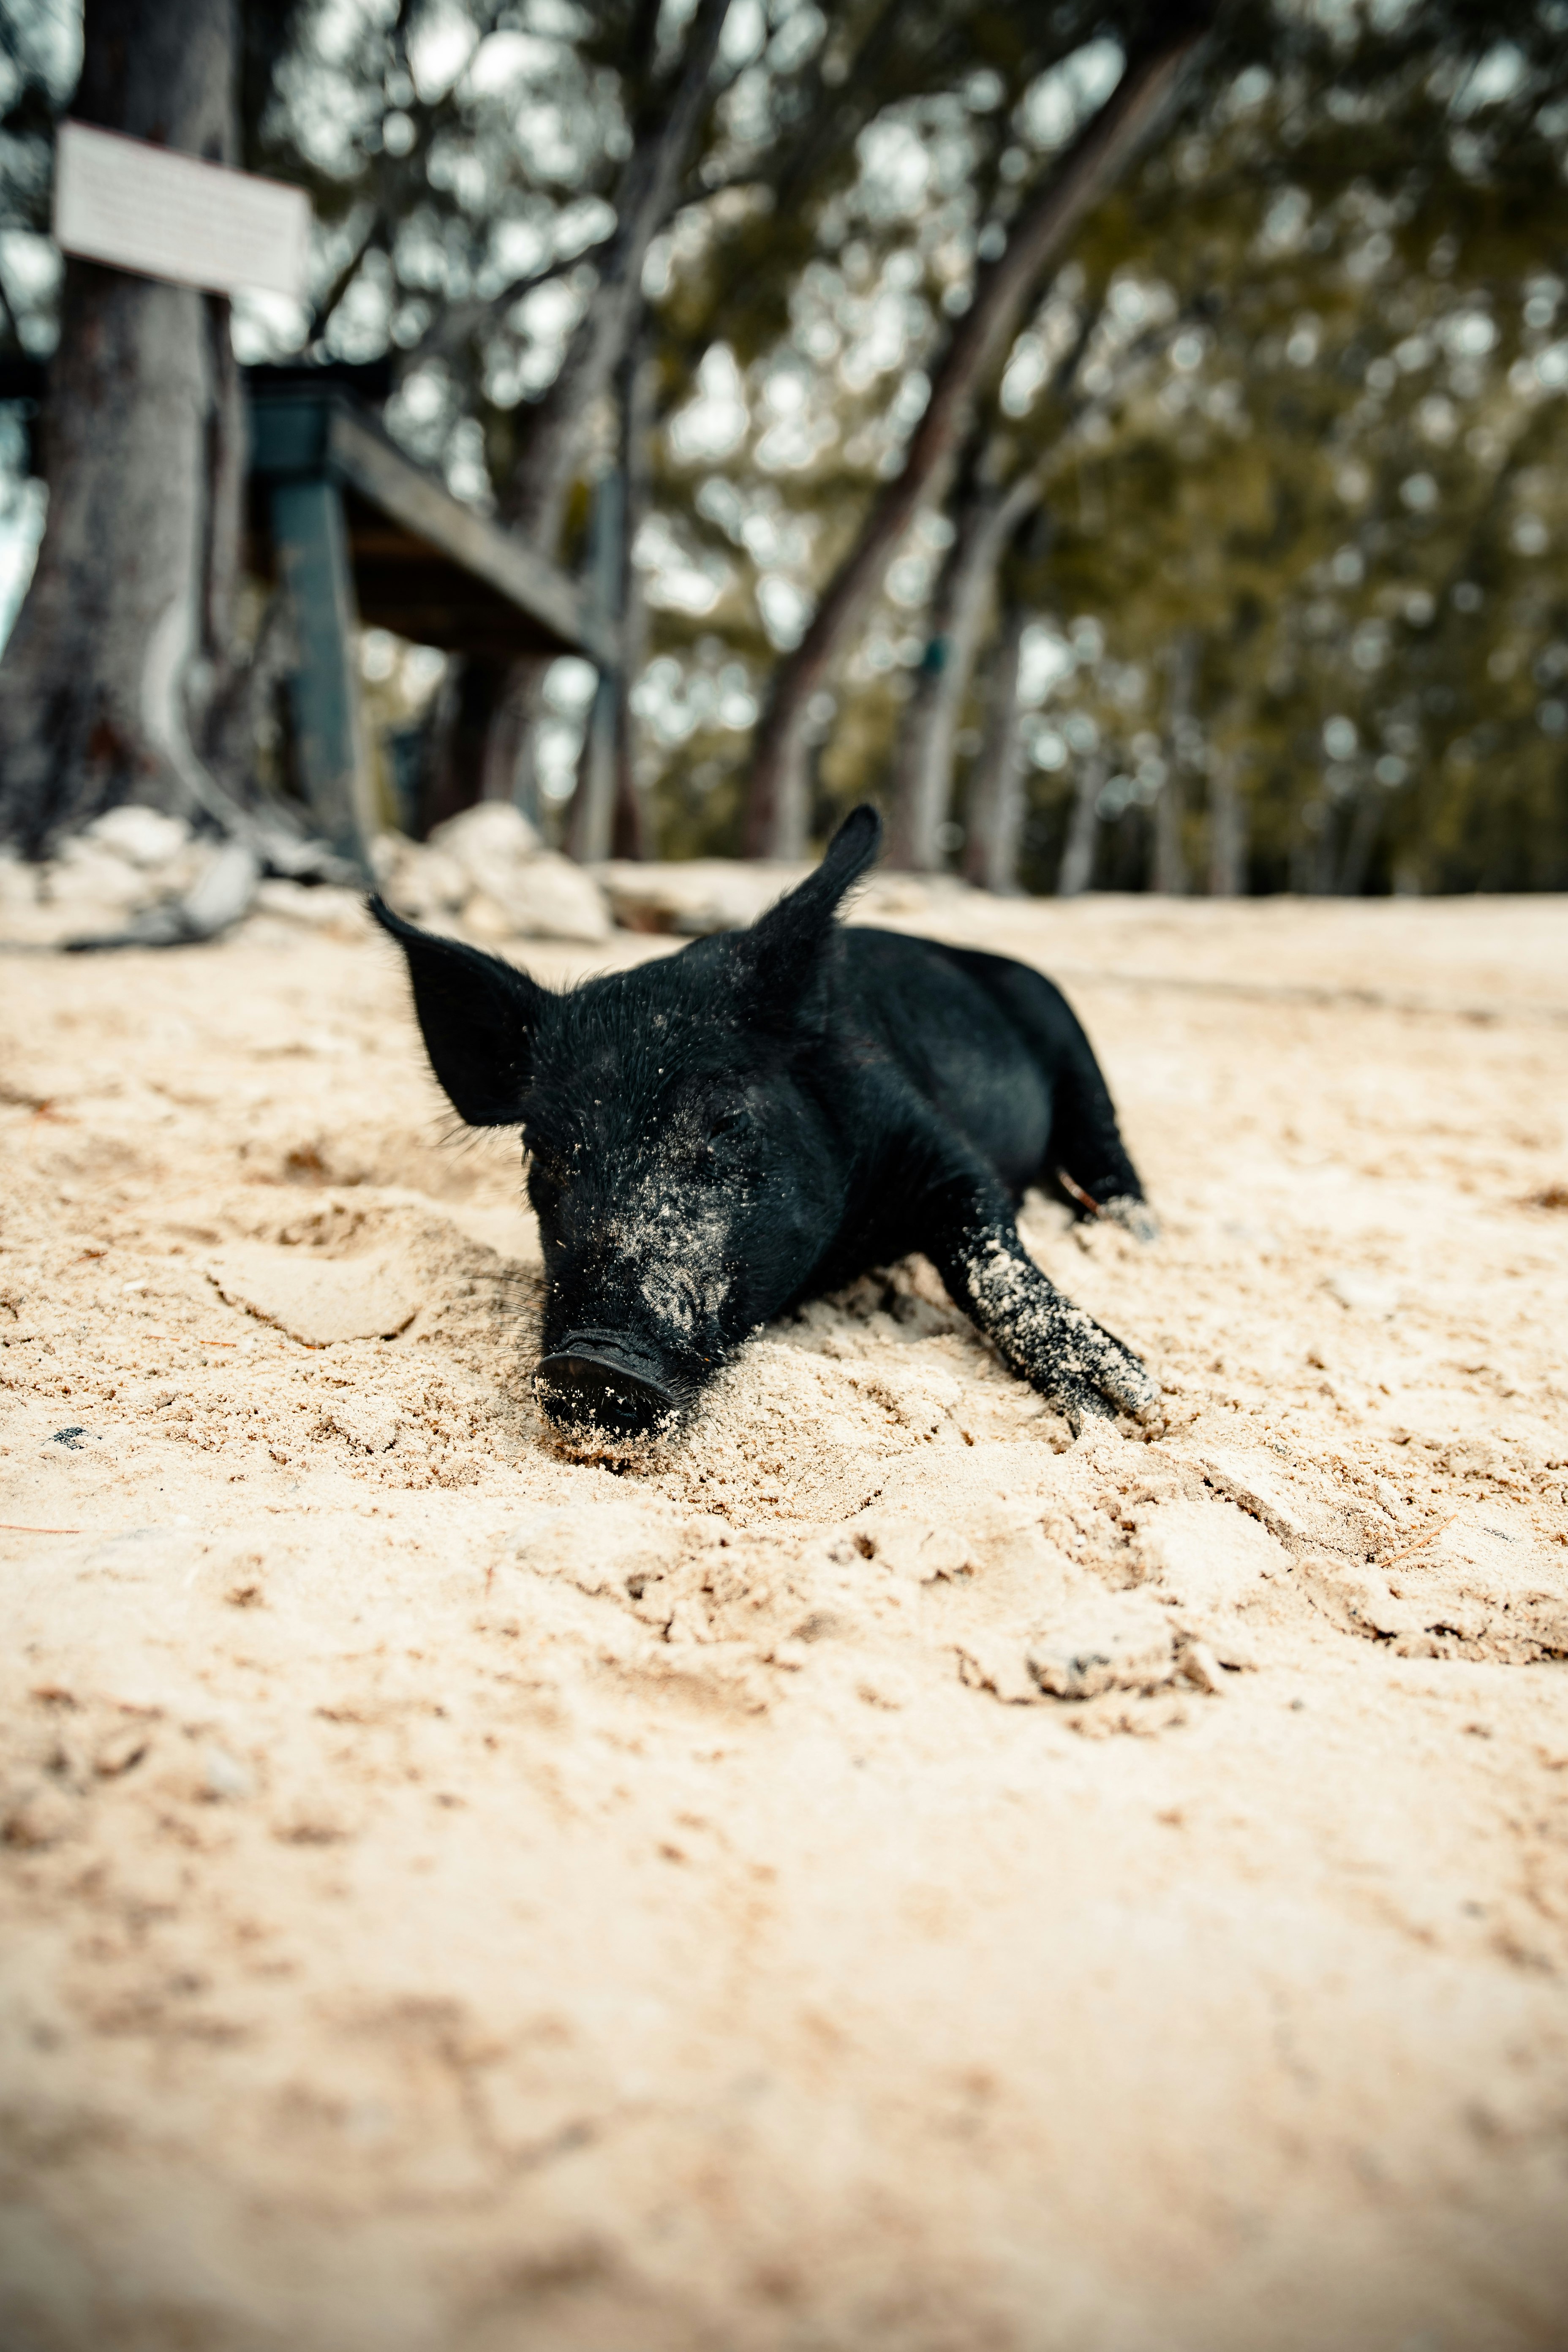 black pig walking on brown sand during daytime